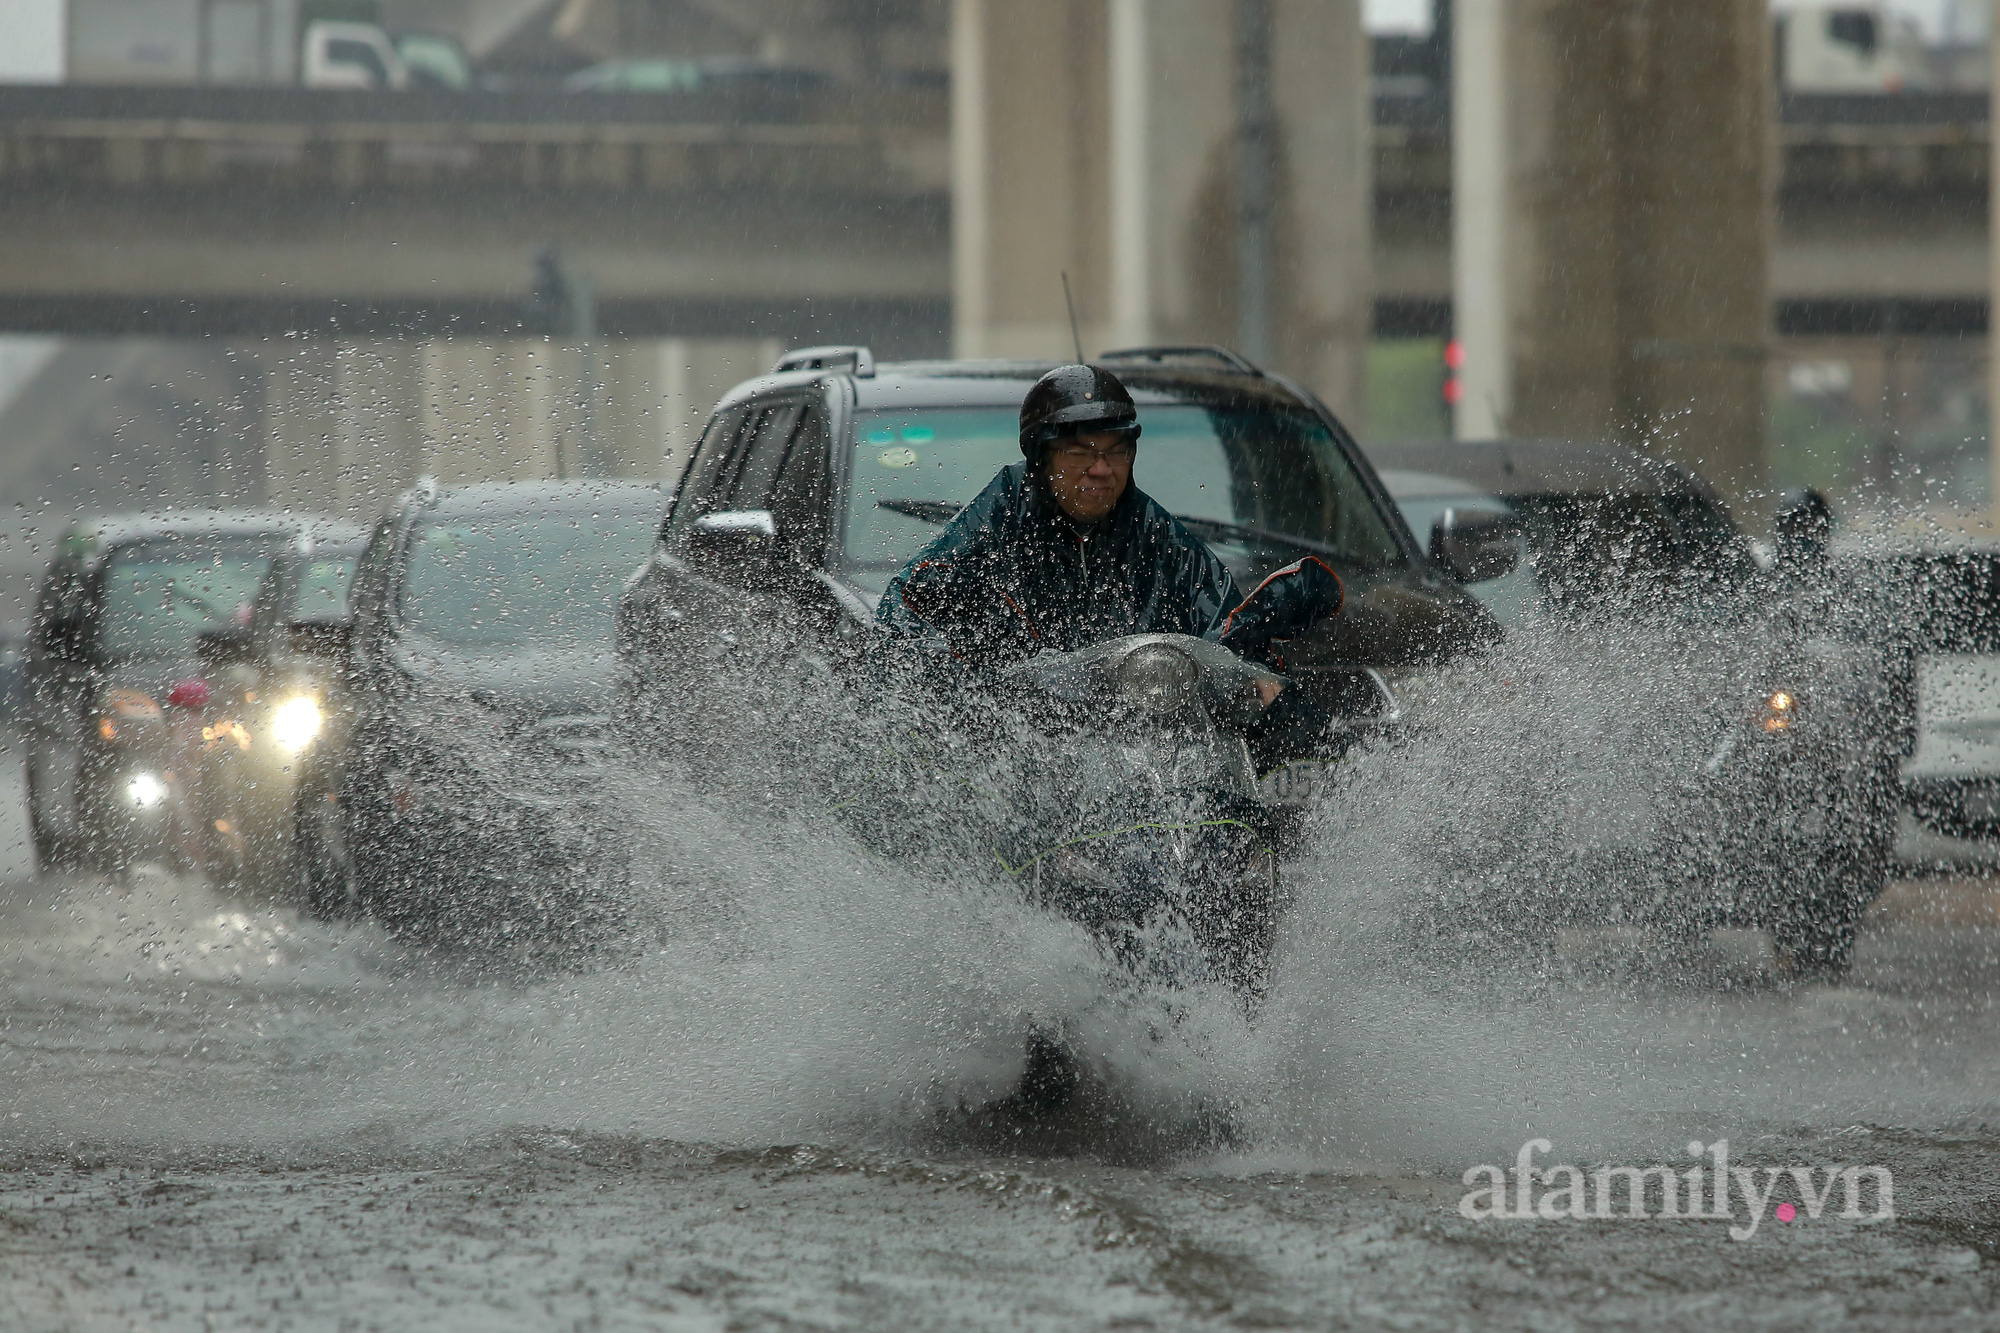 Đường phố ùn tắc, người Hà Nội vật lộn đi làm trong cơn mưa tầm tã - Ảnh 15.